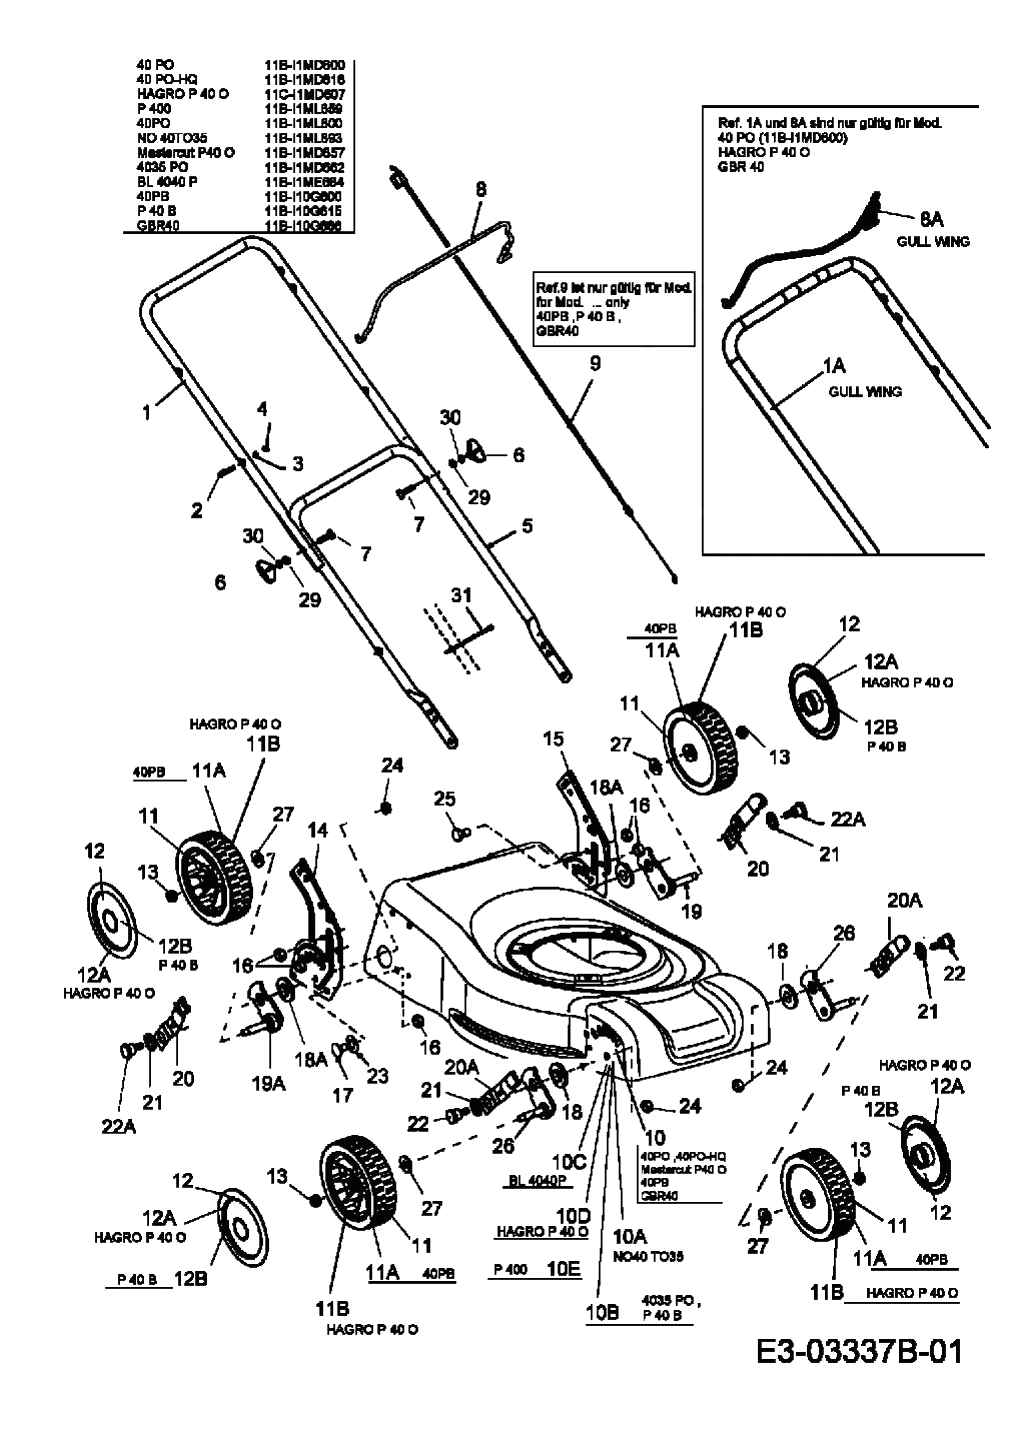 MTD Артикул 11B-I1ML600 (год выпуска 2008). Ручка, колеса, регулятор высоты реза